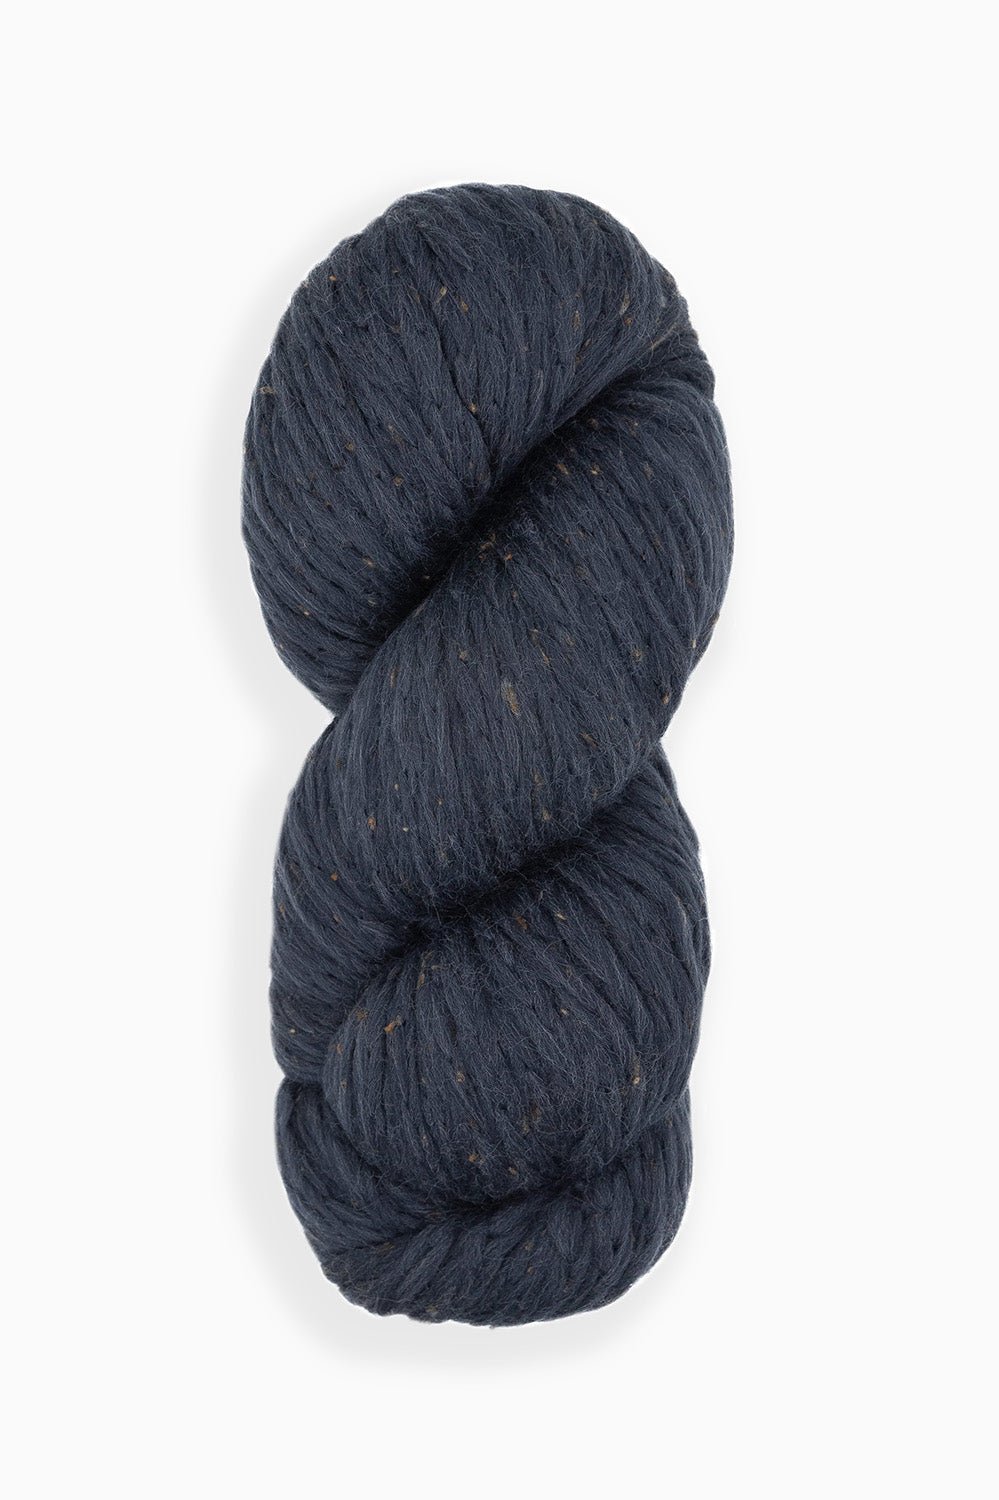 Super Bulky Wool Blend Cozy Fleck Yarn by K+C by K+C